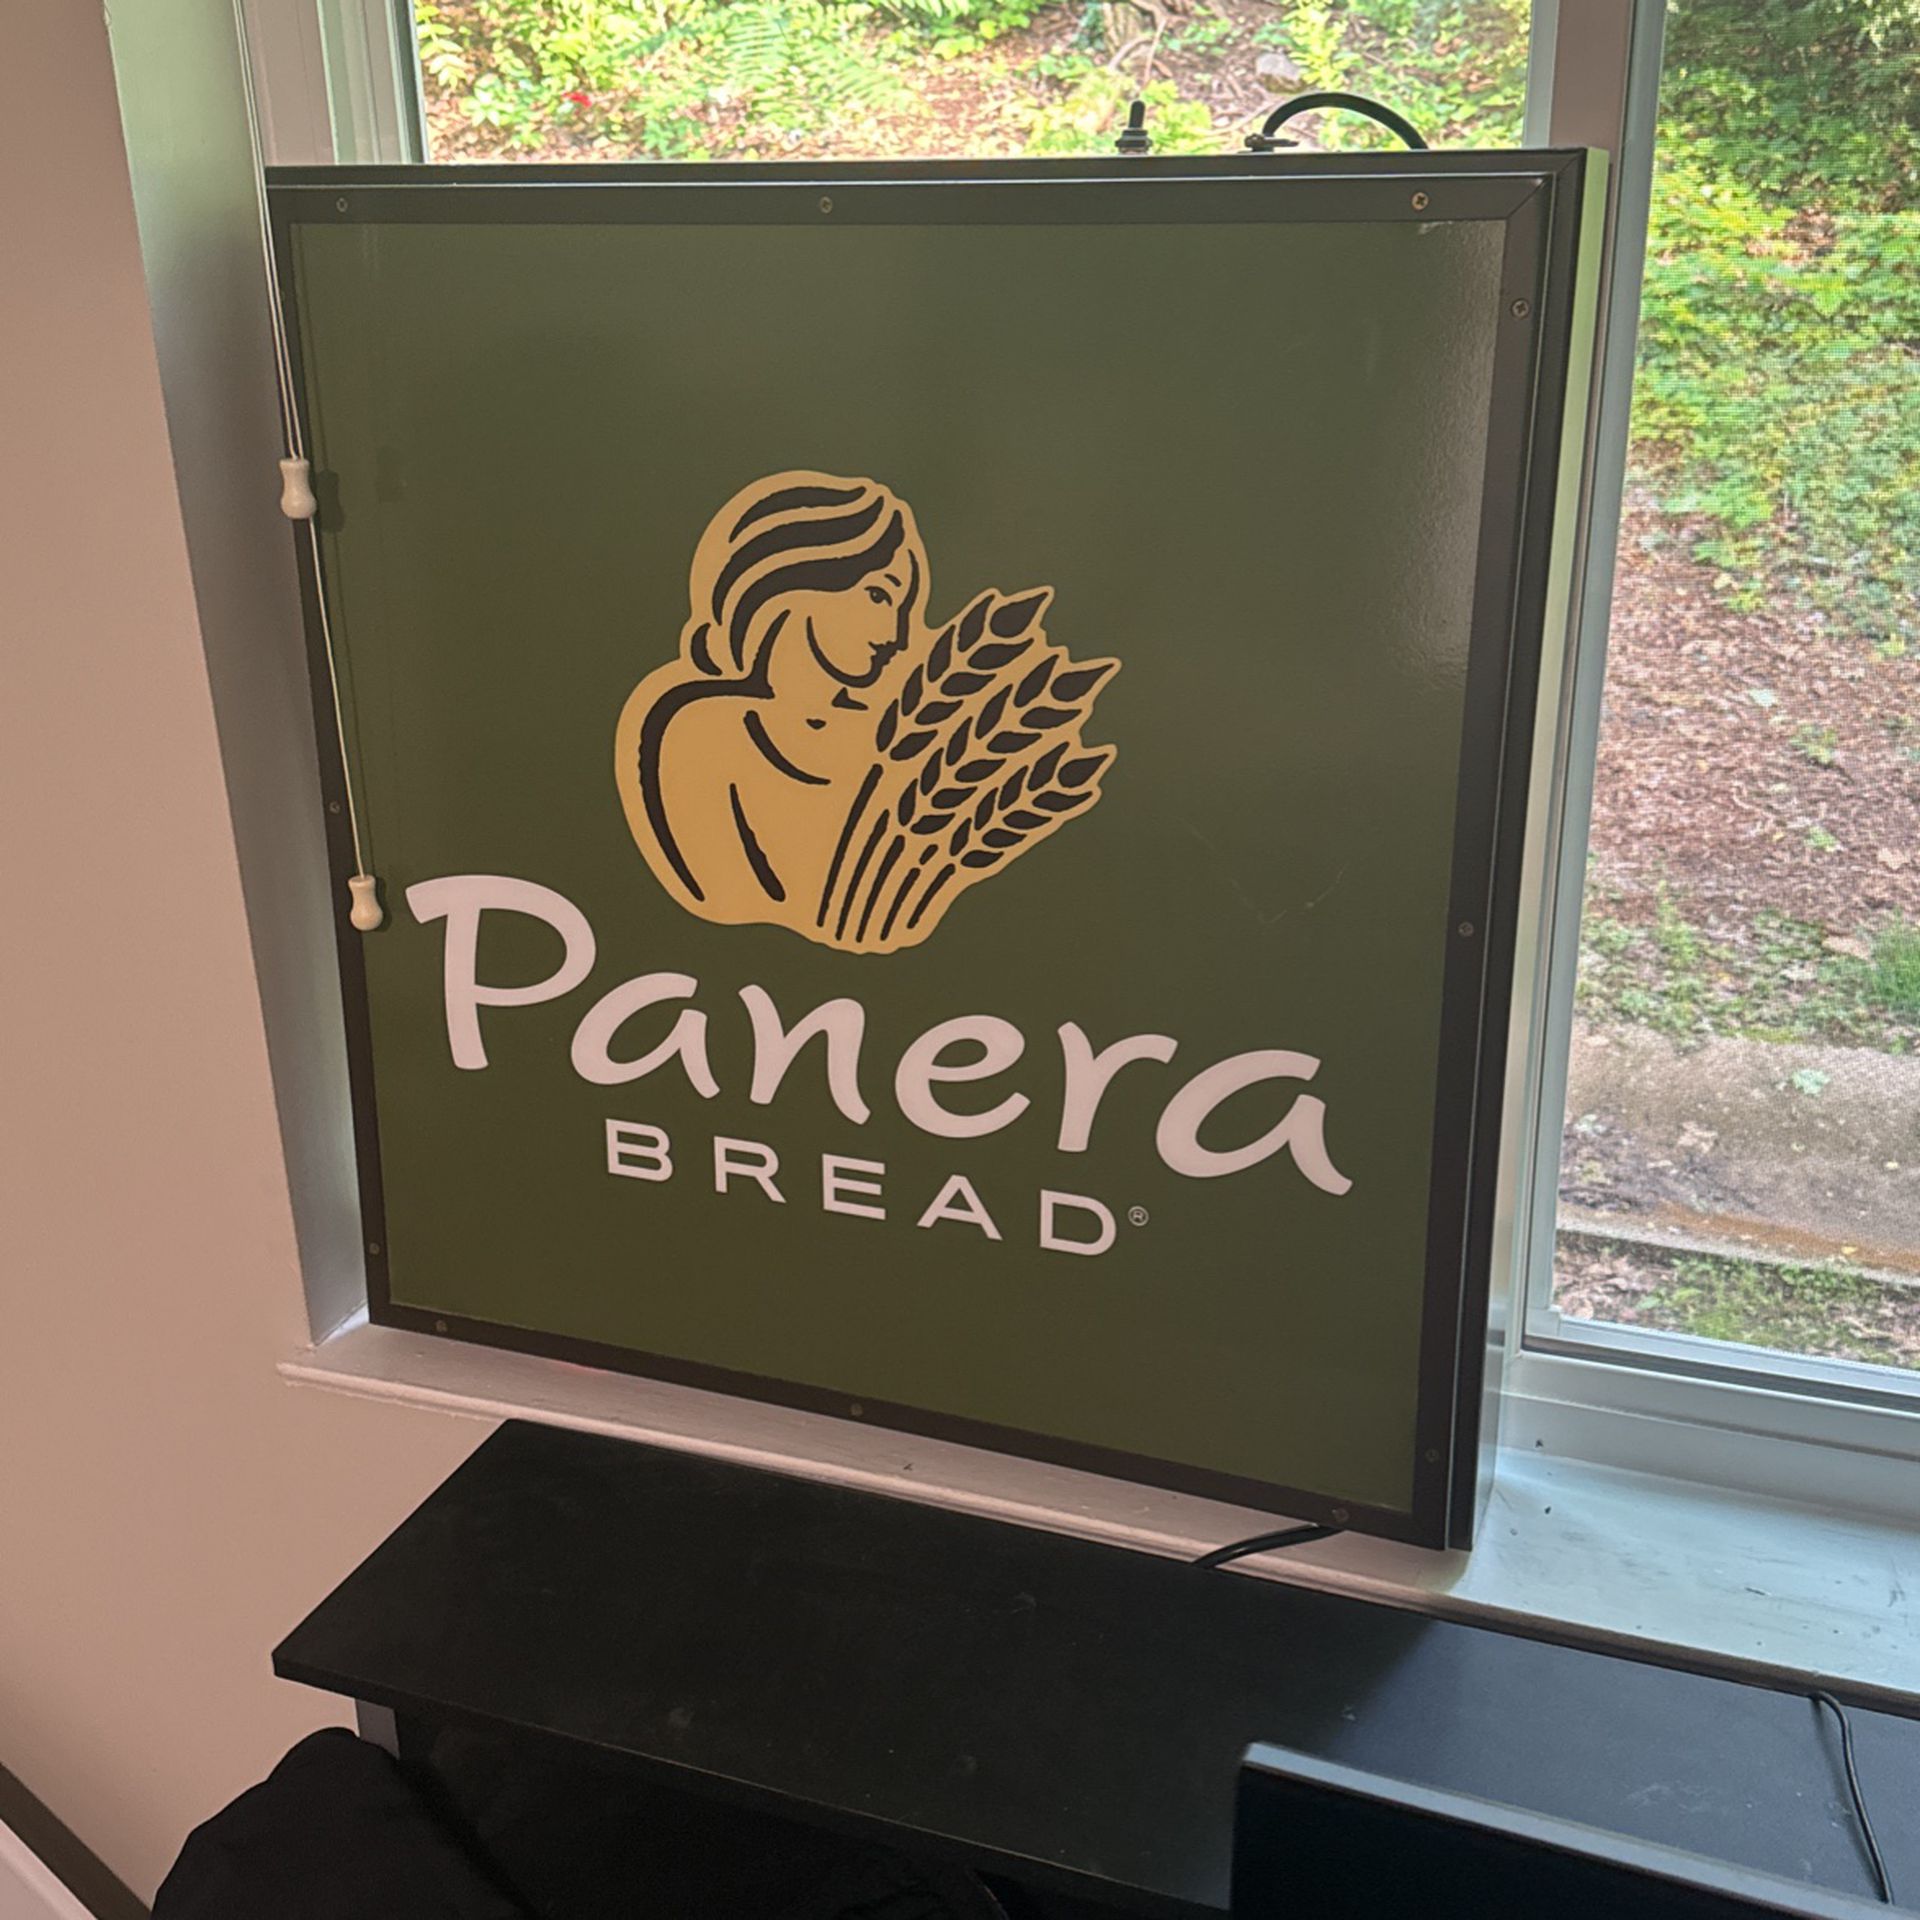 Light up Panera Bread sign